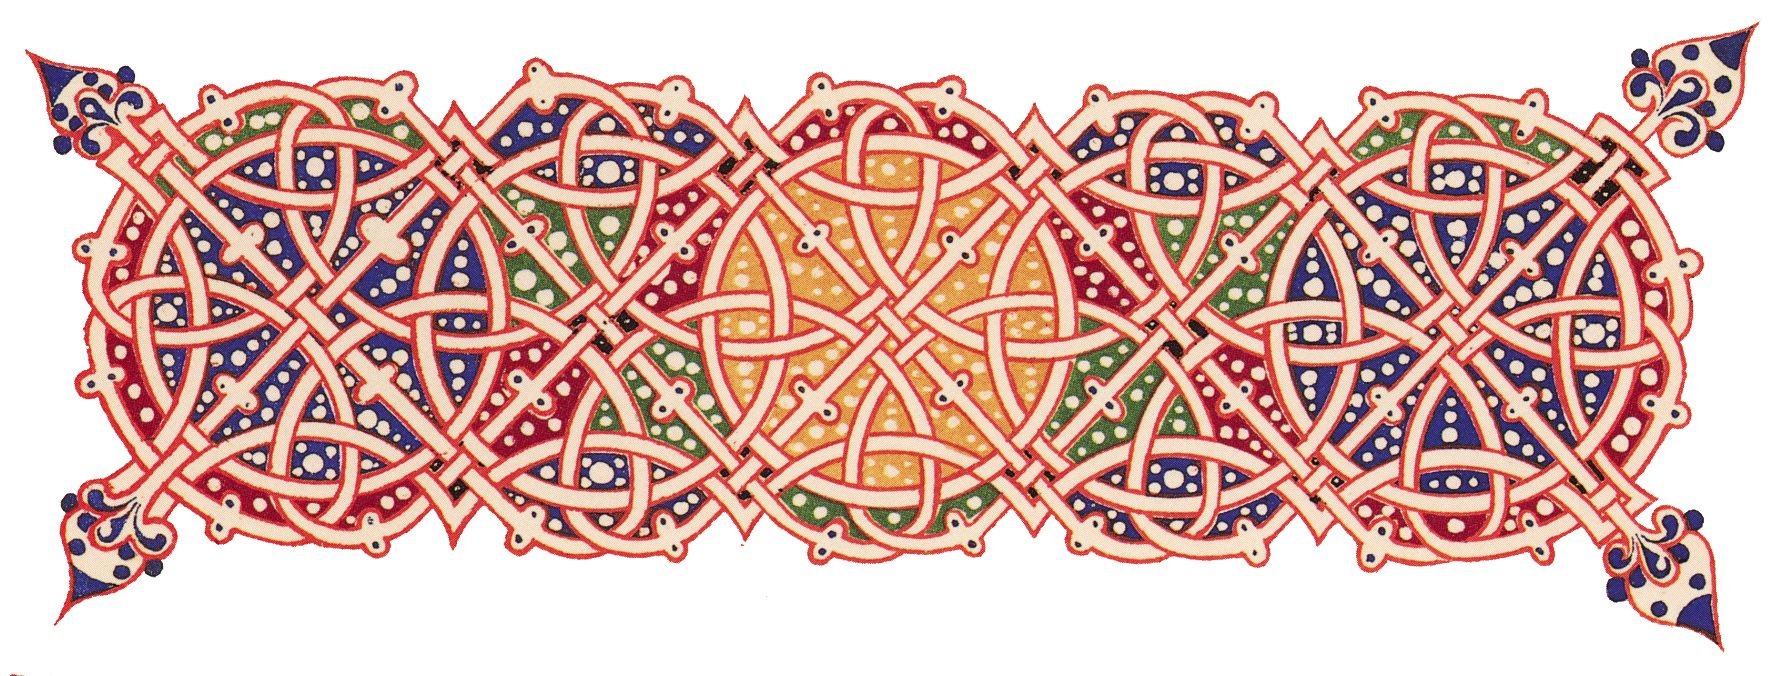 Византийская вязь орнамент